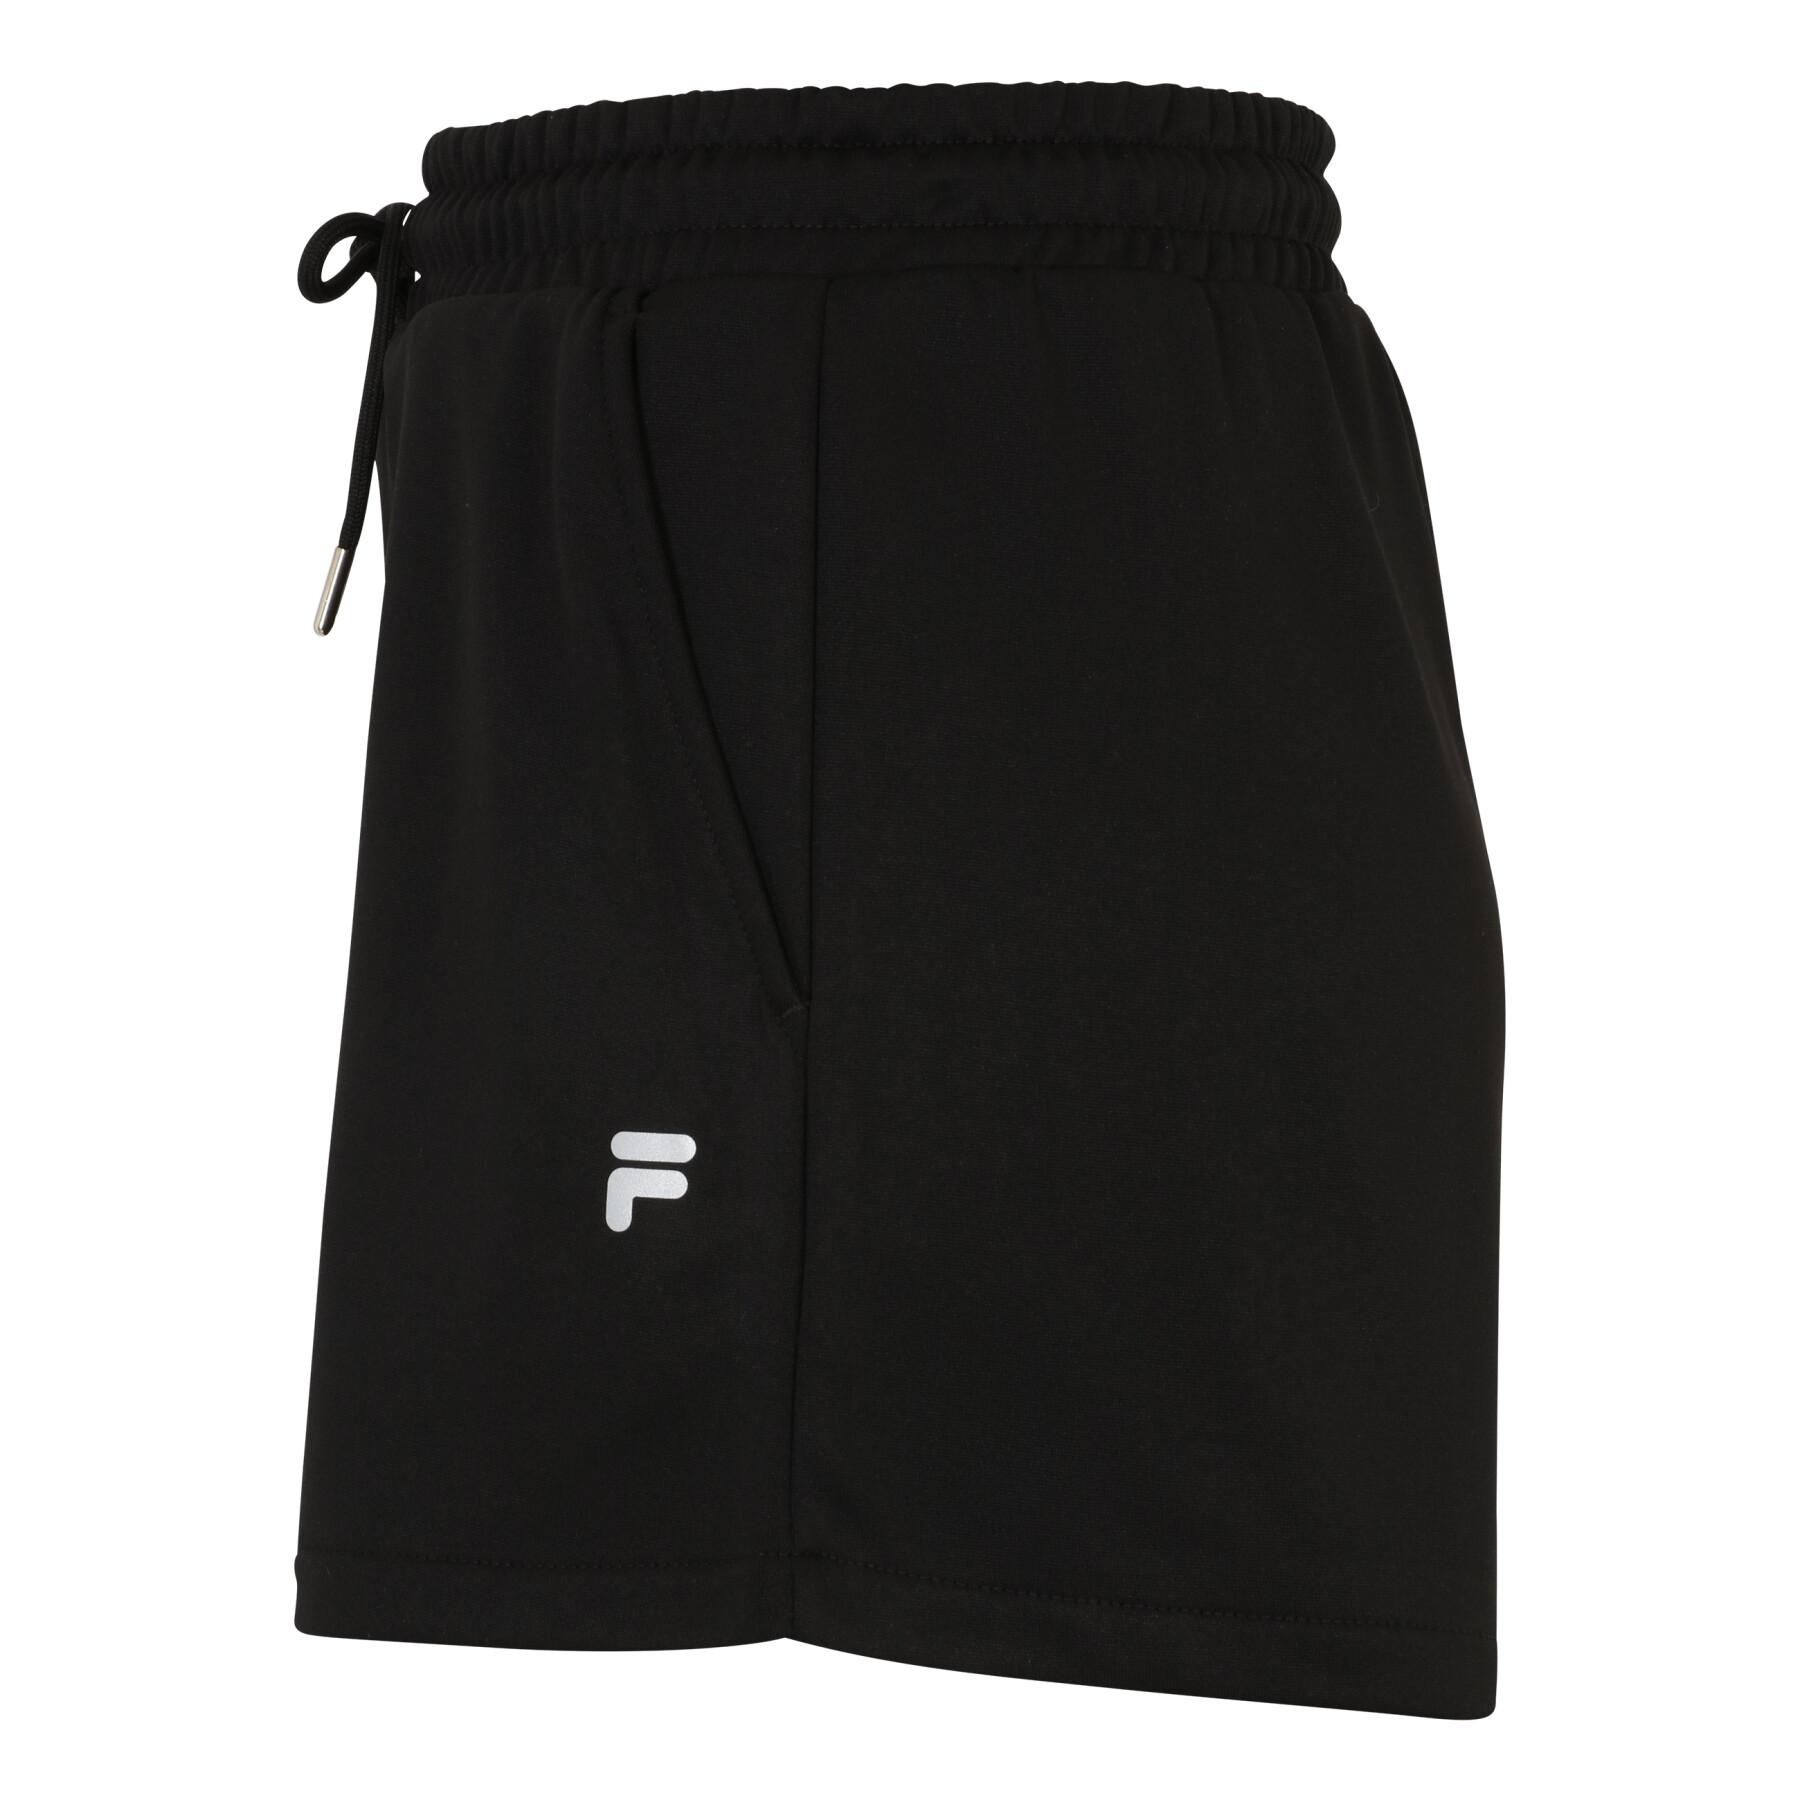 Women's shorts Fila Recke